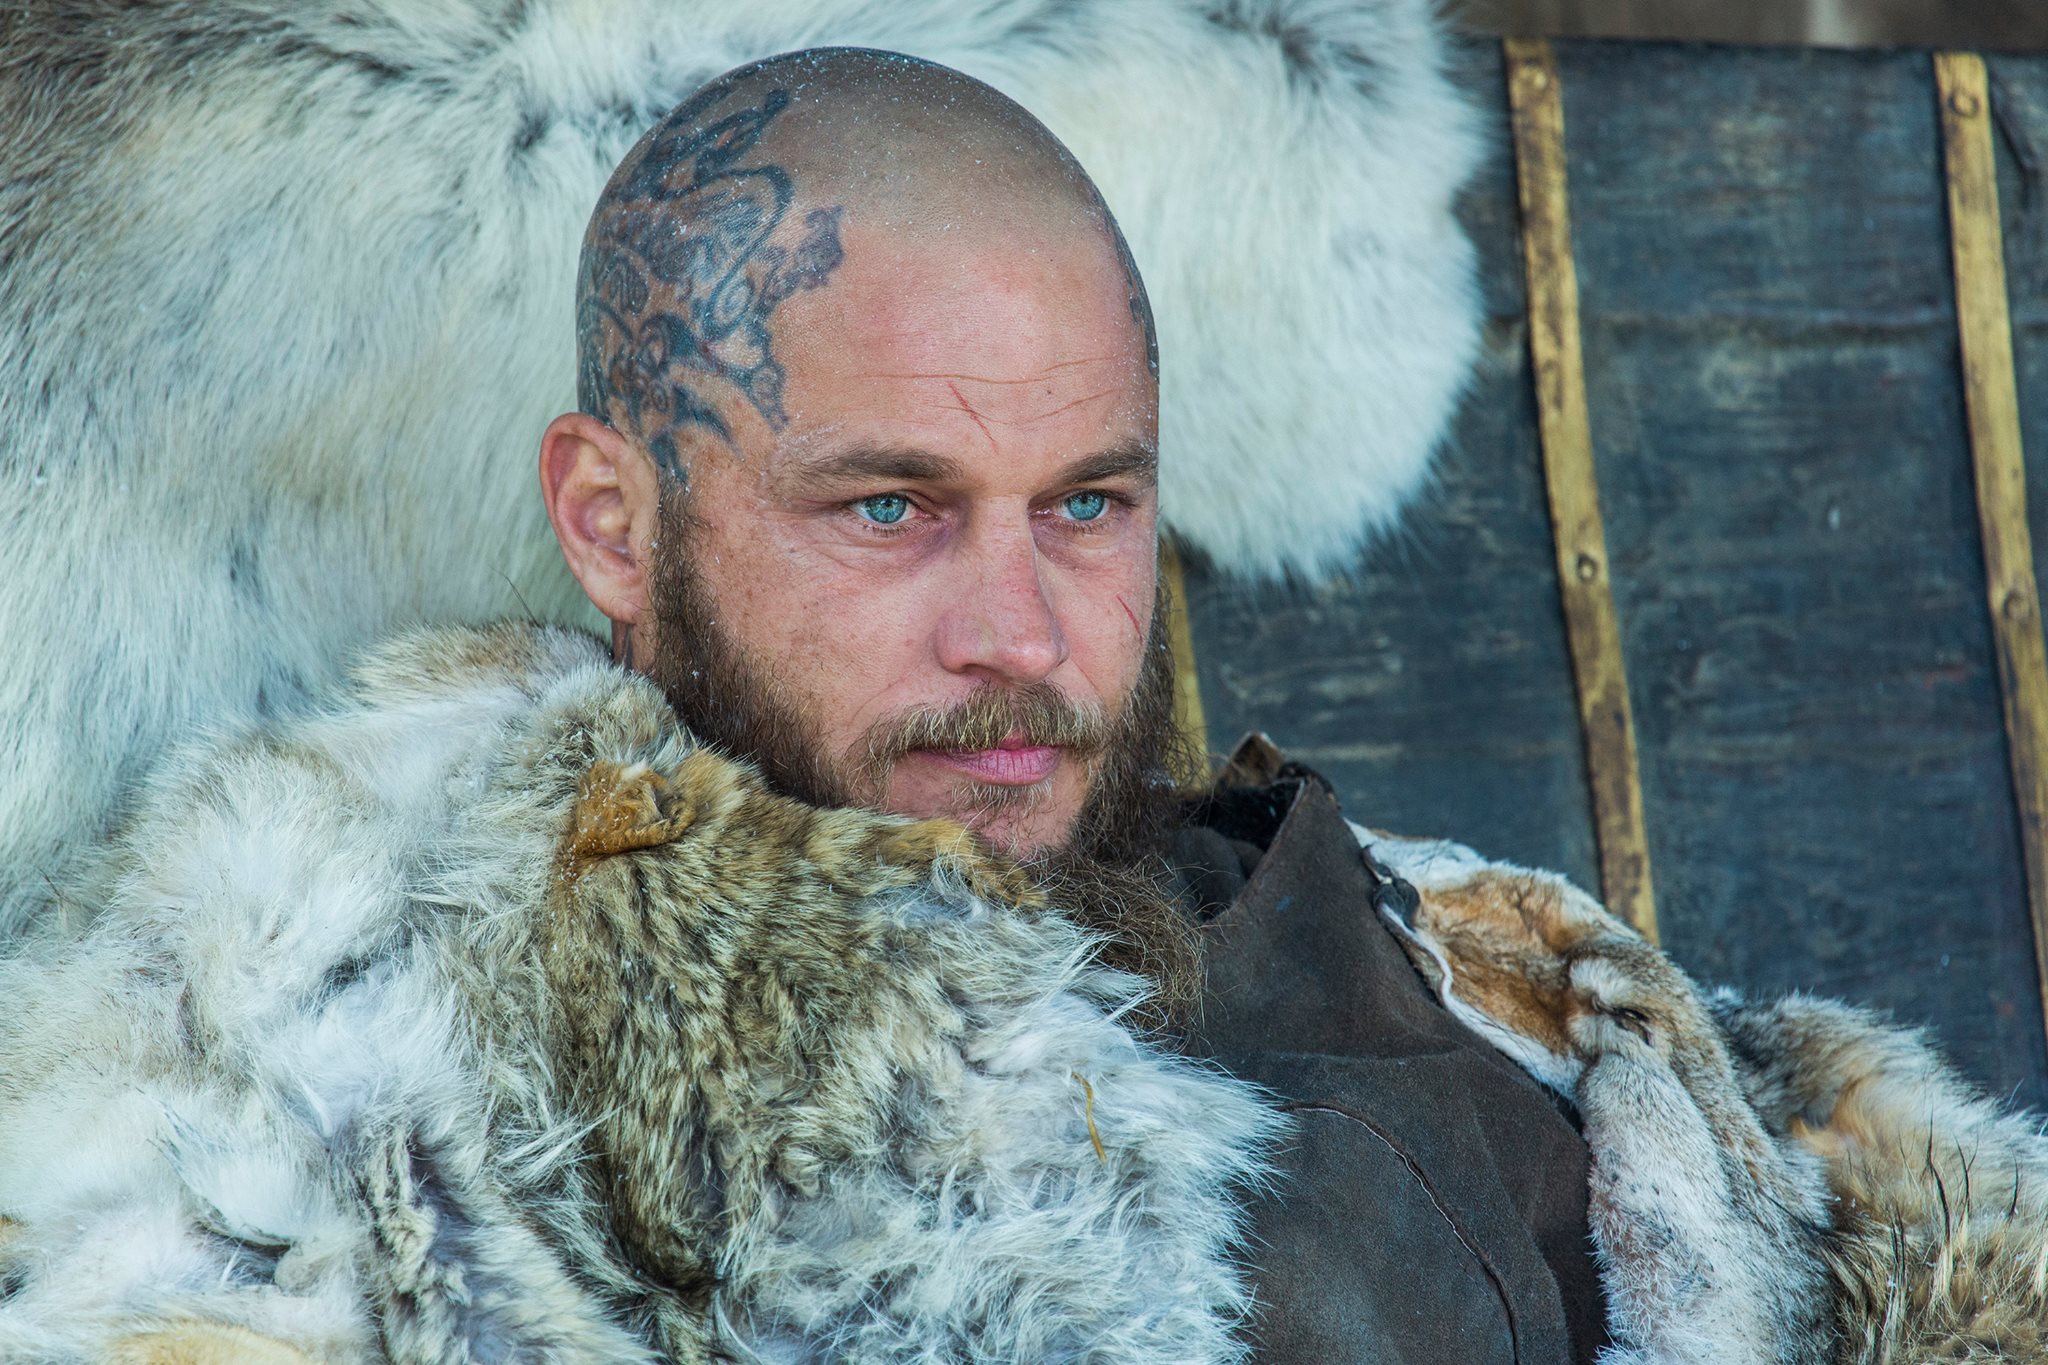 Fur 'N' Things - The hit TV show Vikings wears real fur in